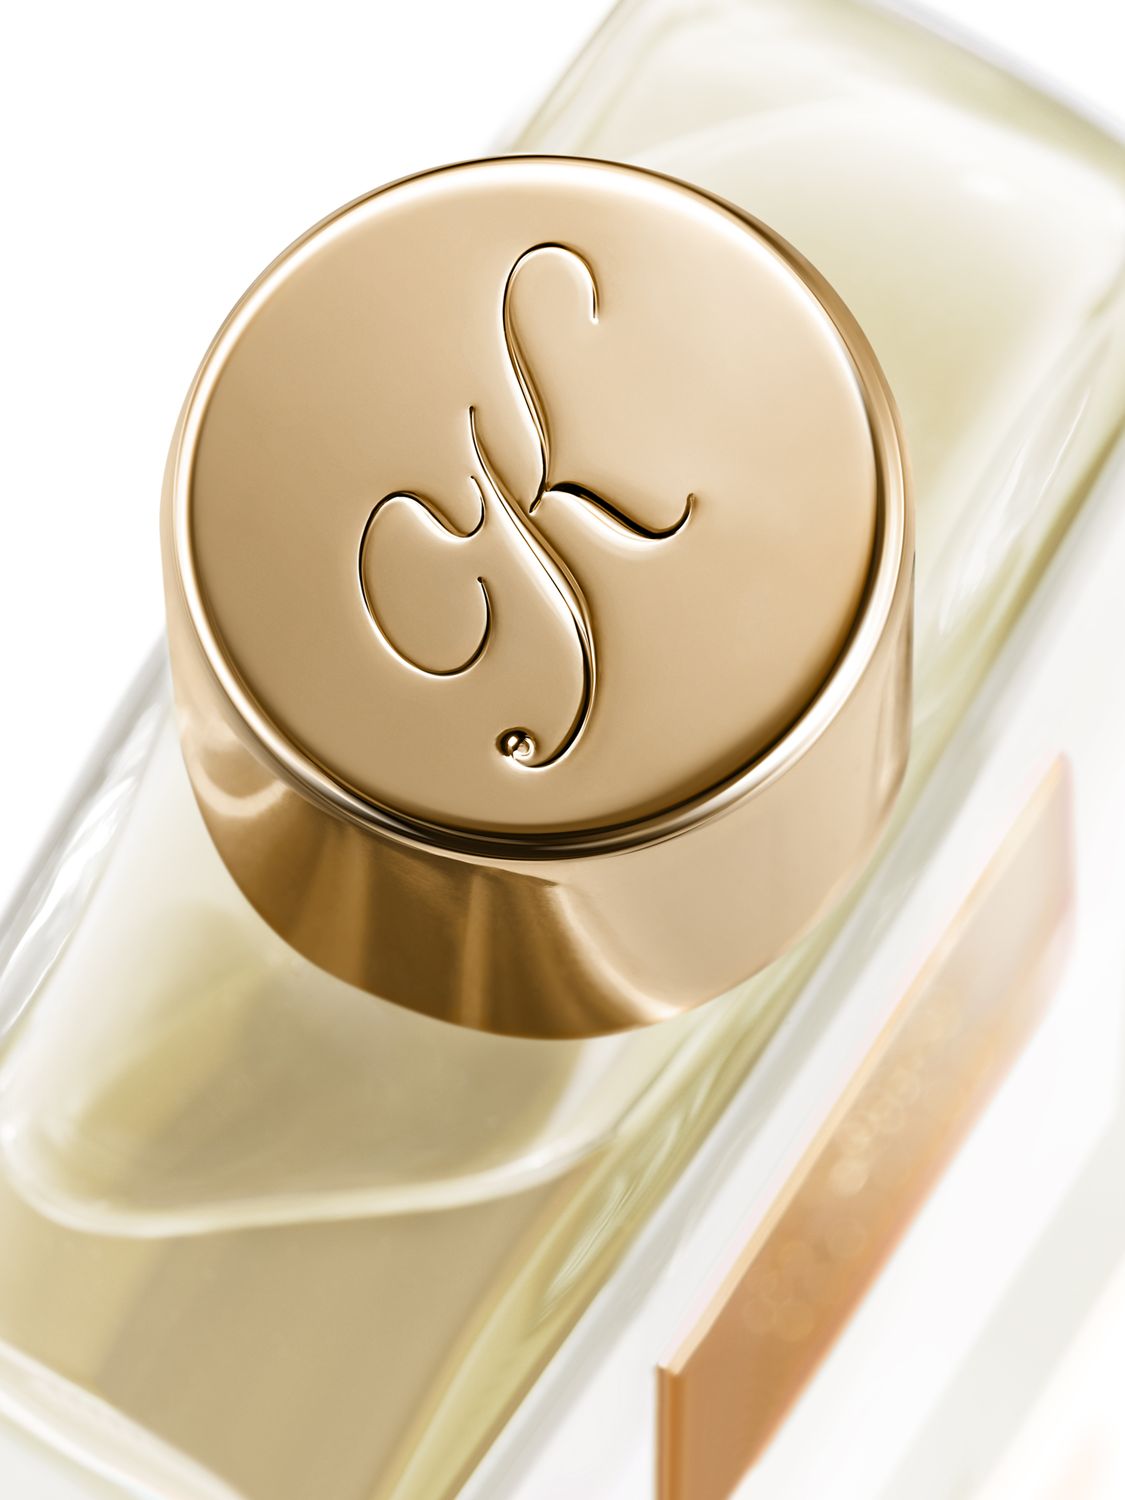 KILIAN PARIS Woman In Gold Eau de Parfum, 50ml 3